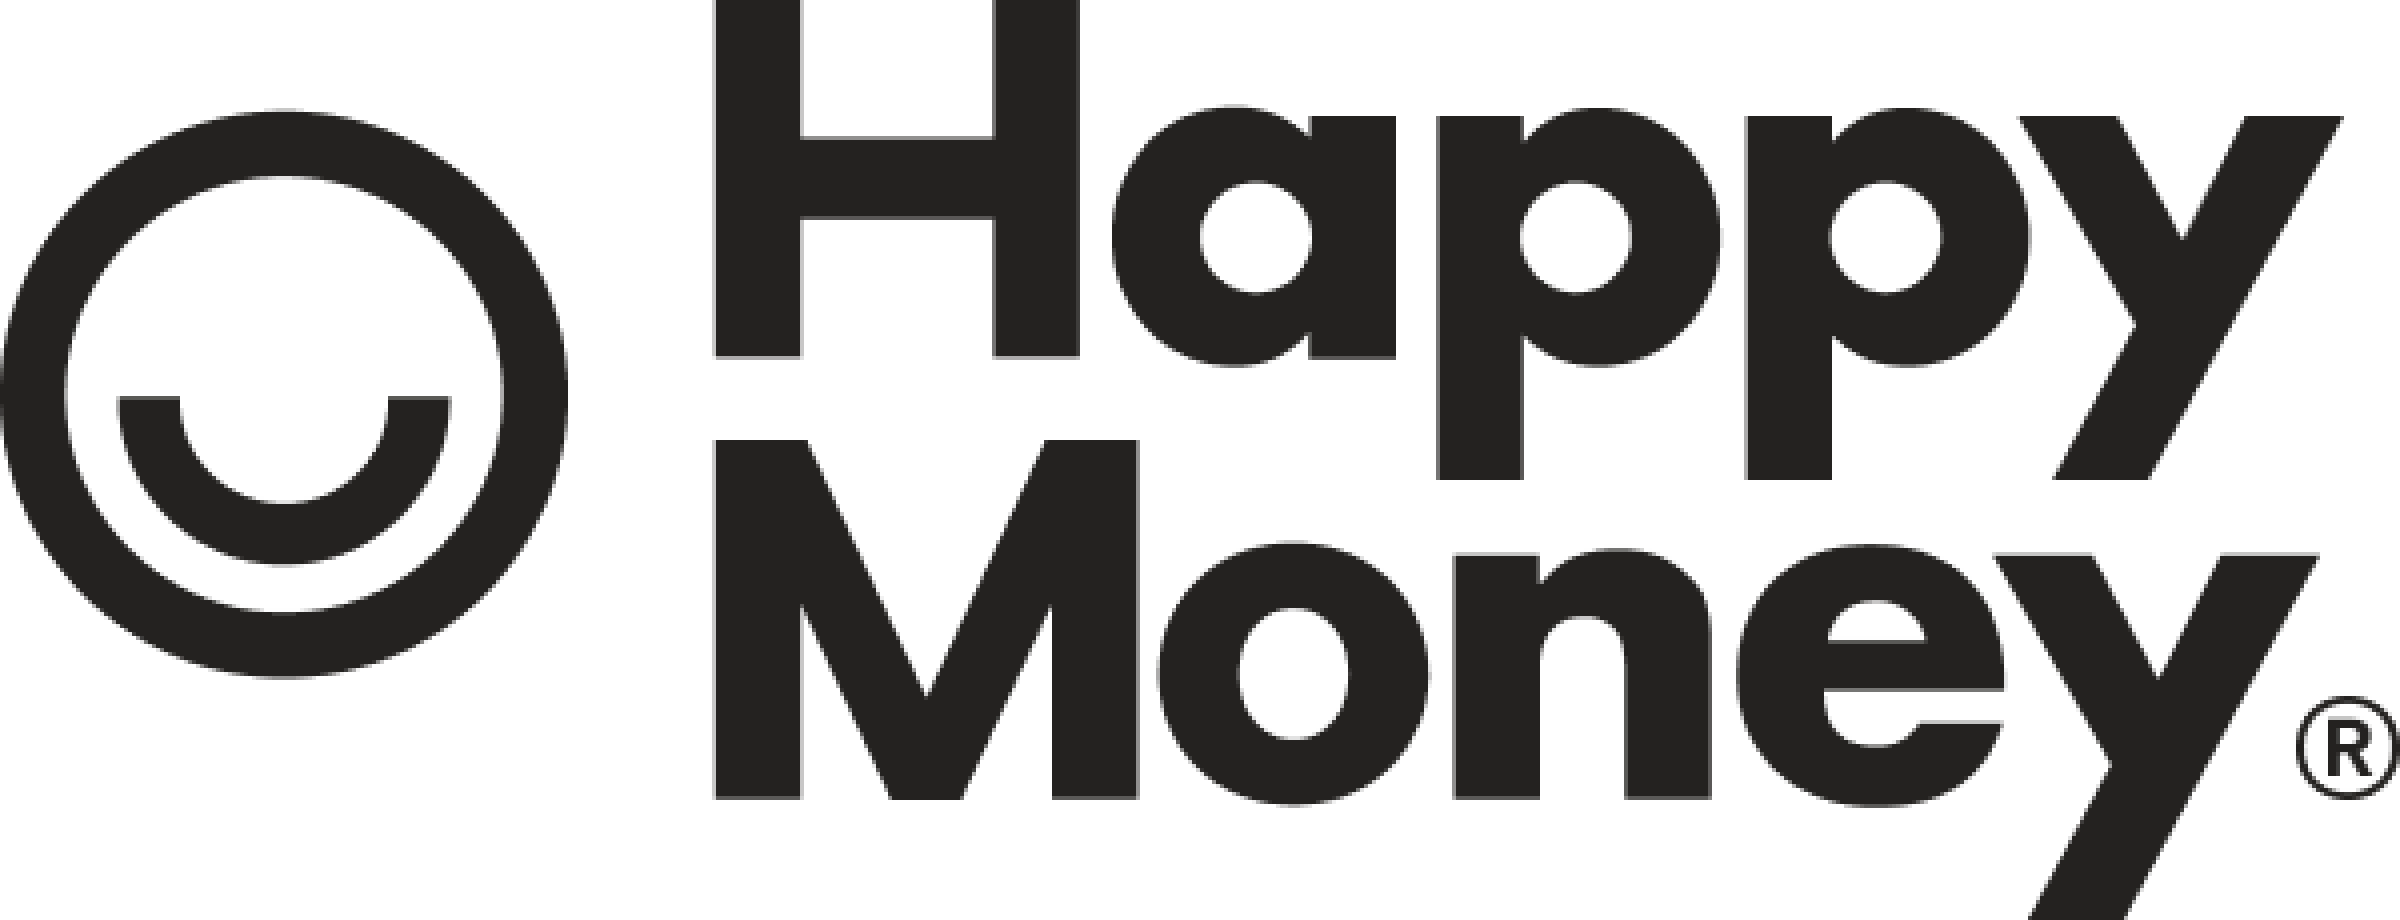 Happy Money Logo